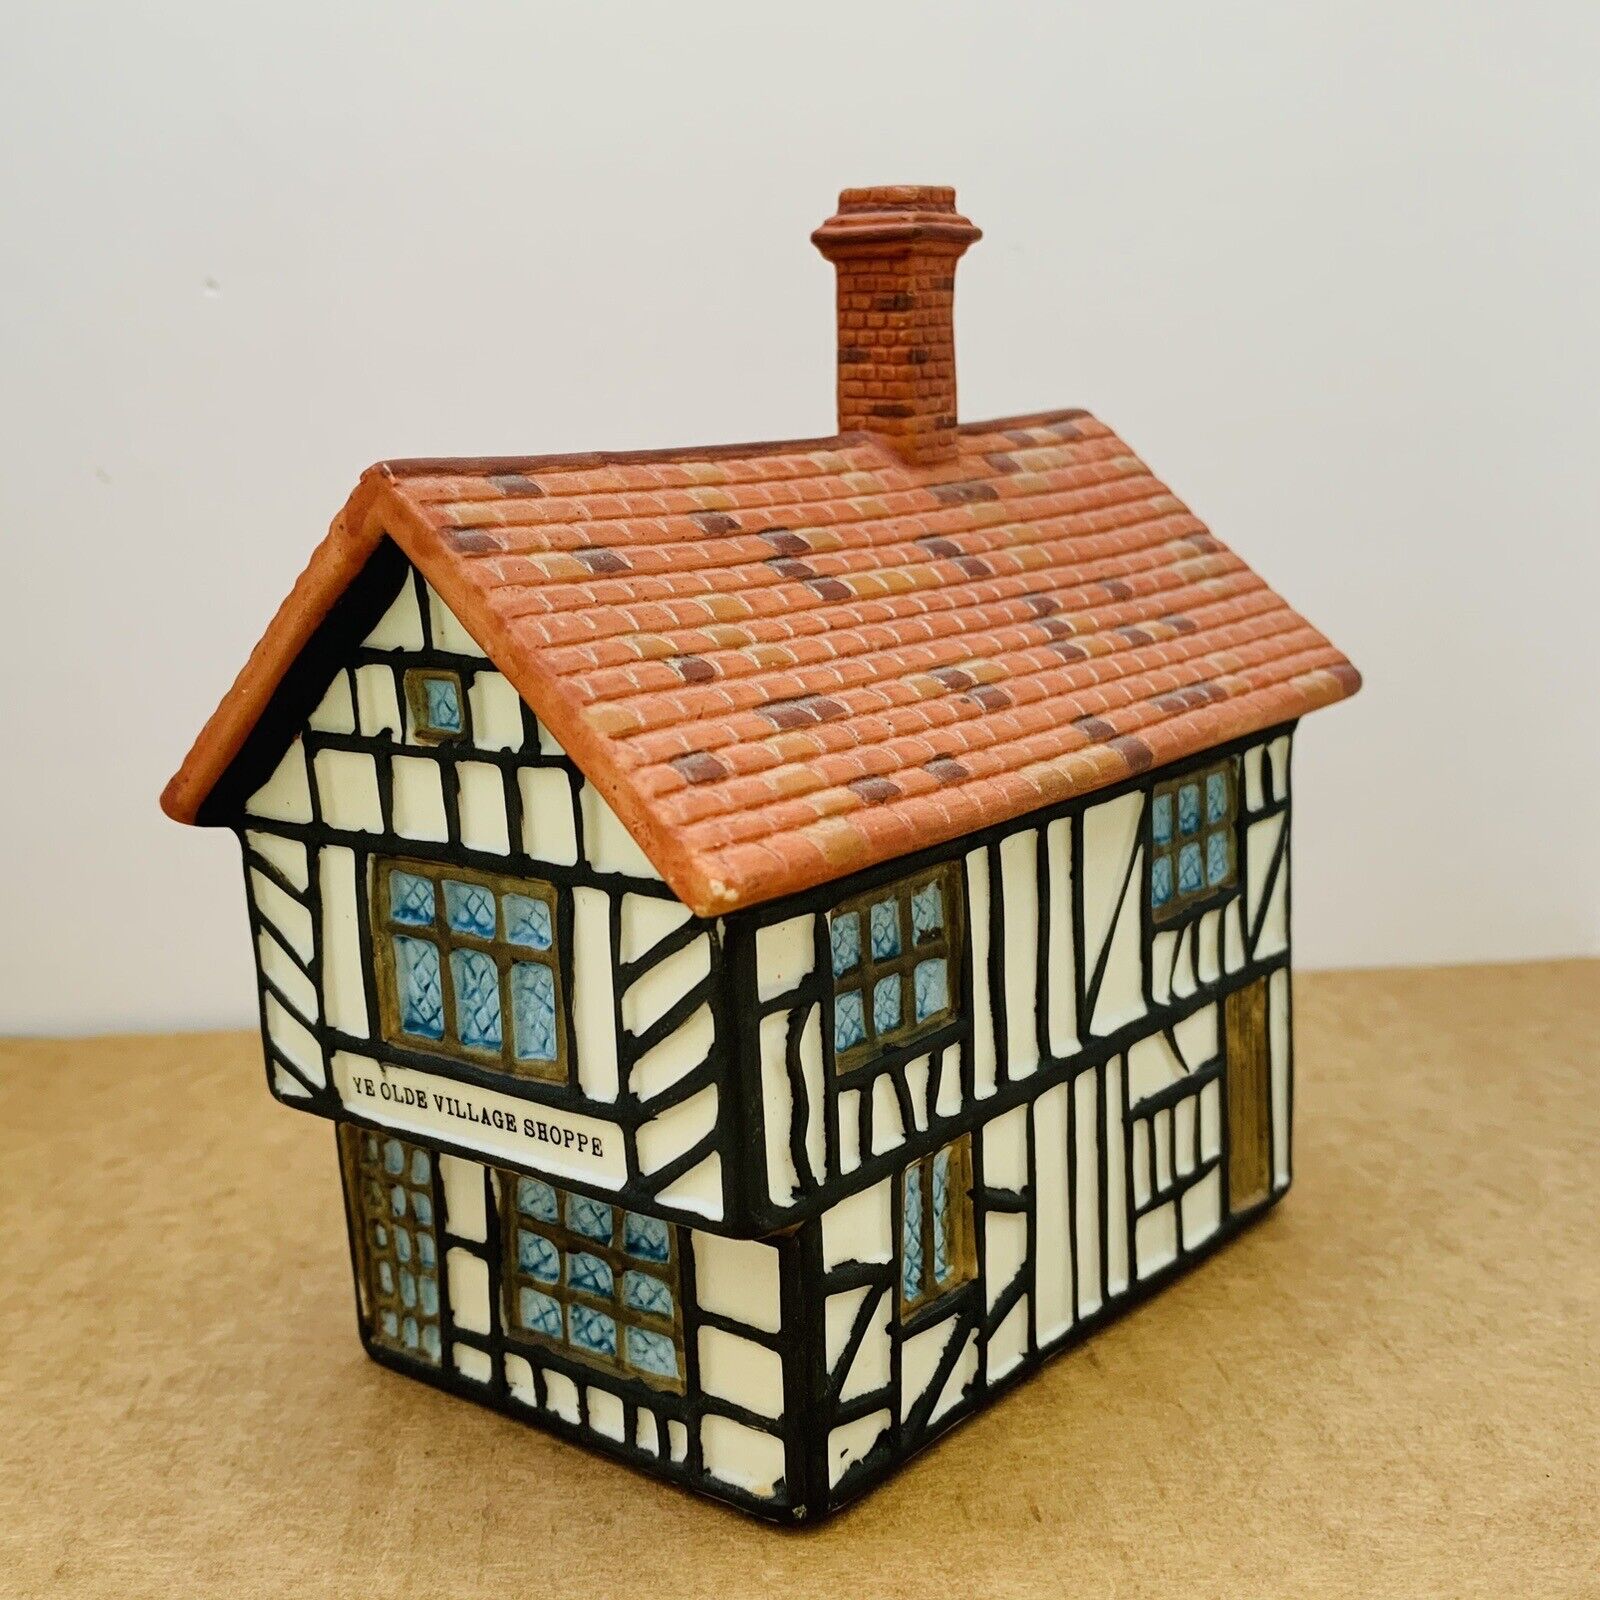 Vtg A SAALHEIMER LTD. Porcelain English Cottage Ye Olde Village Shoppe Christmas